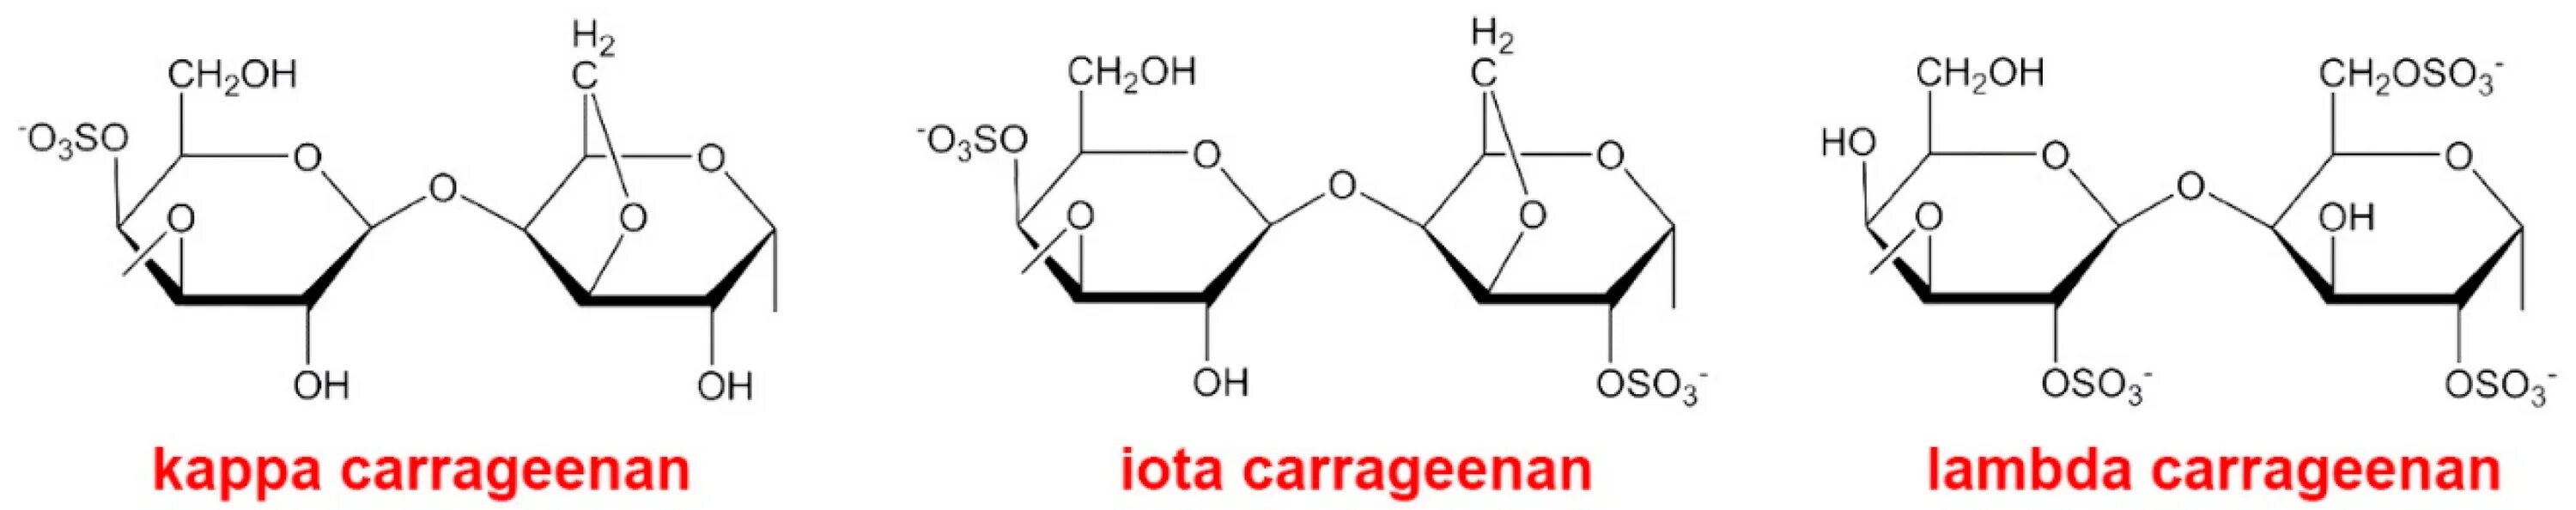 Каппа каррагинан формула. Каппа каррагинан химическая формула. Каррагинан формула. Каррагинан строение.